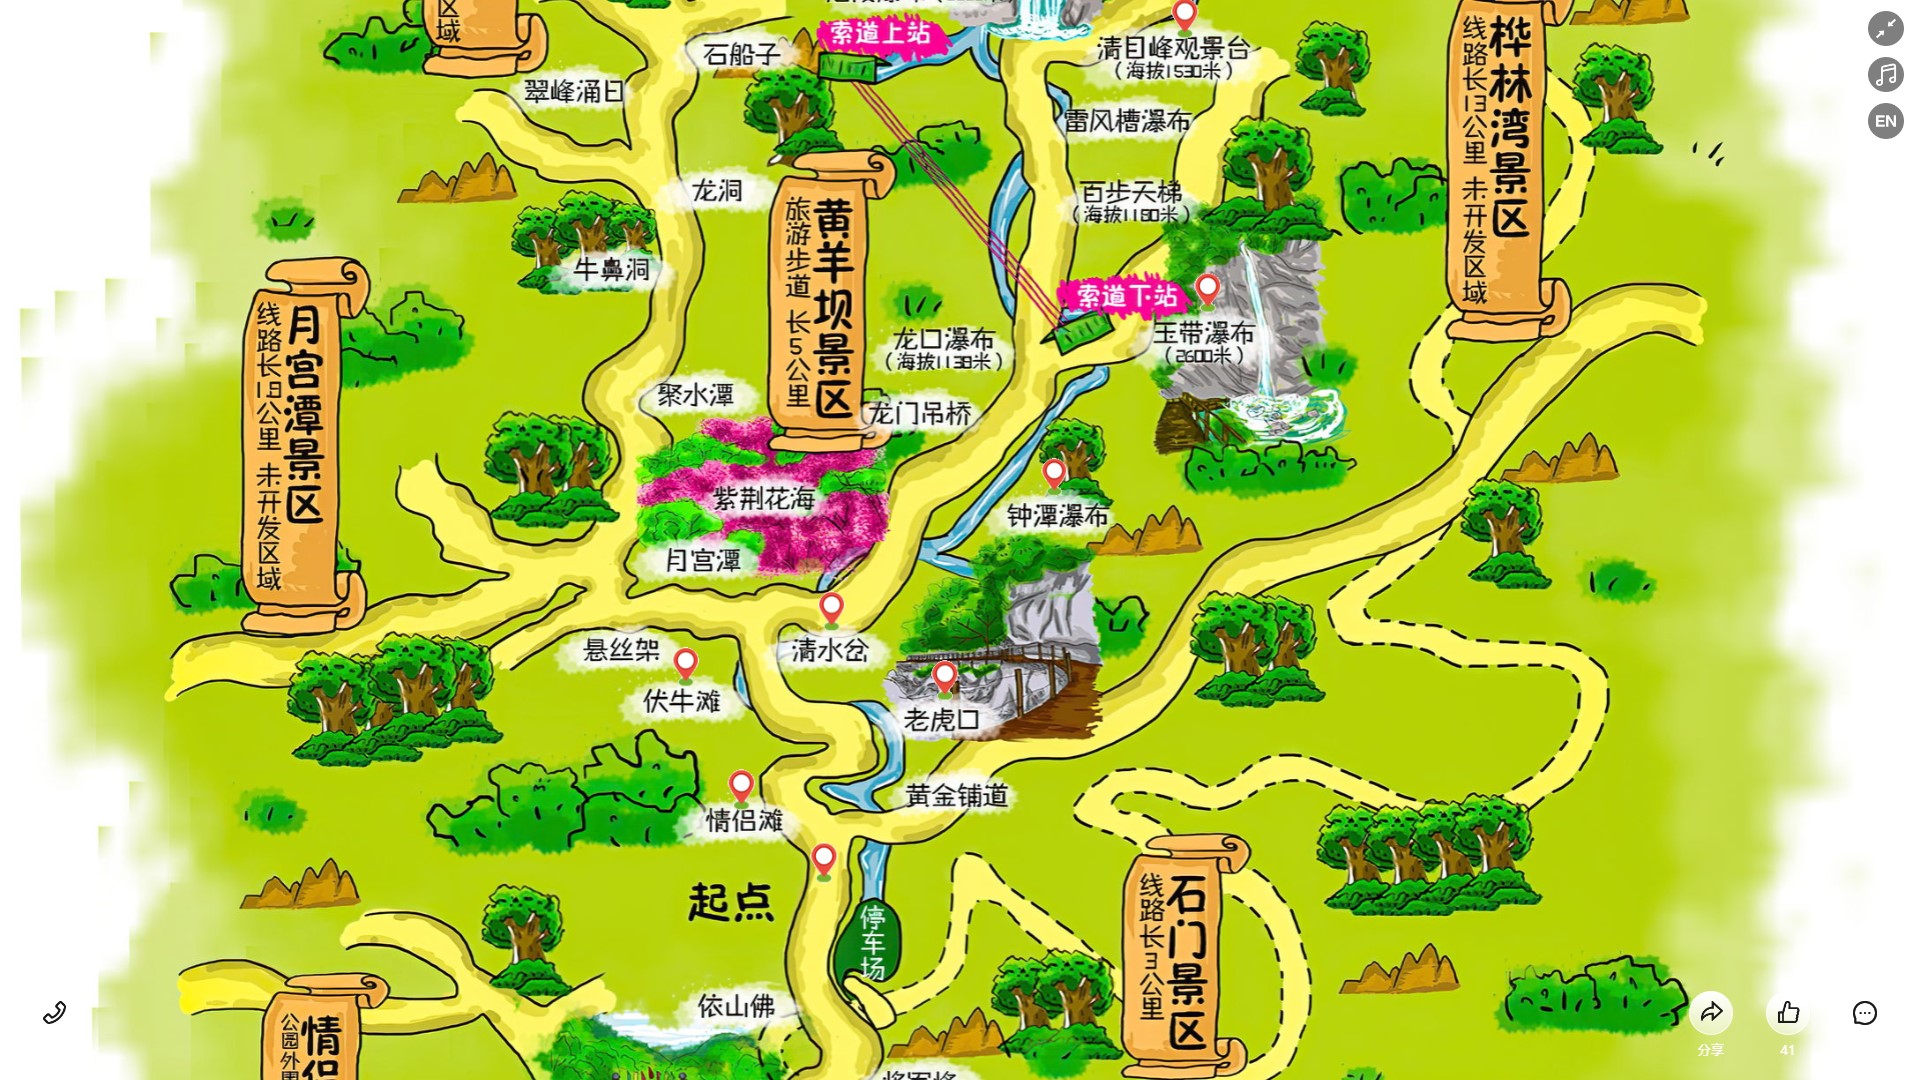 和田县景区导览系统